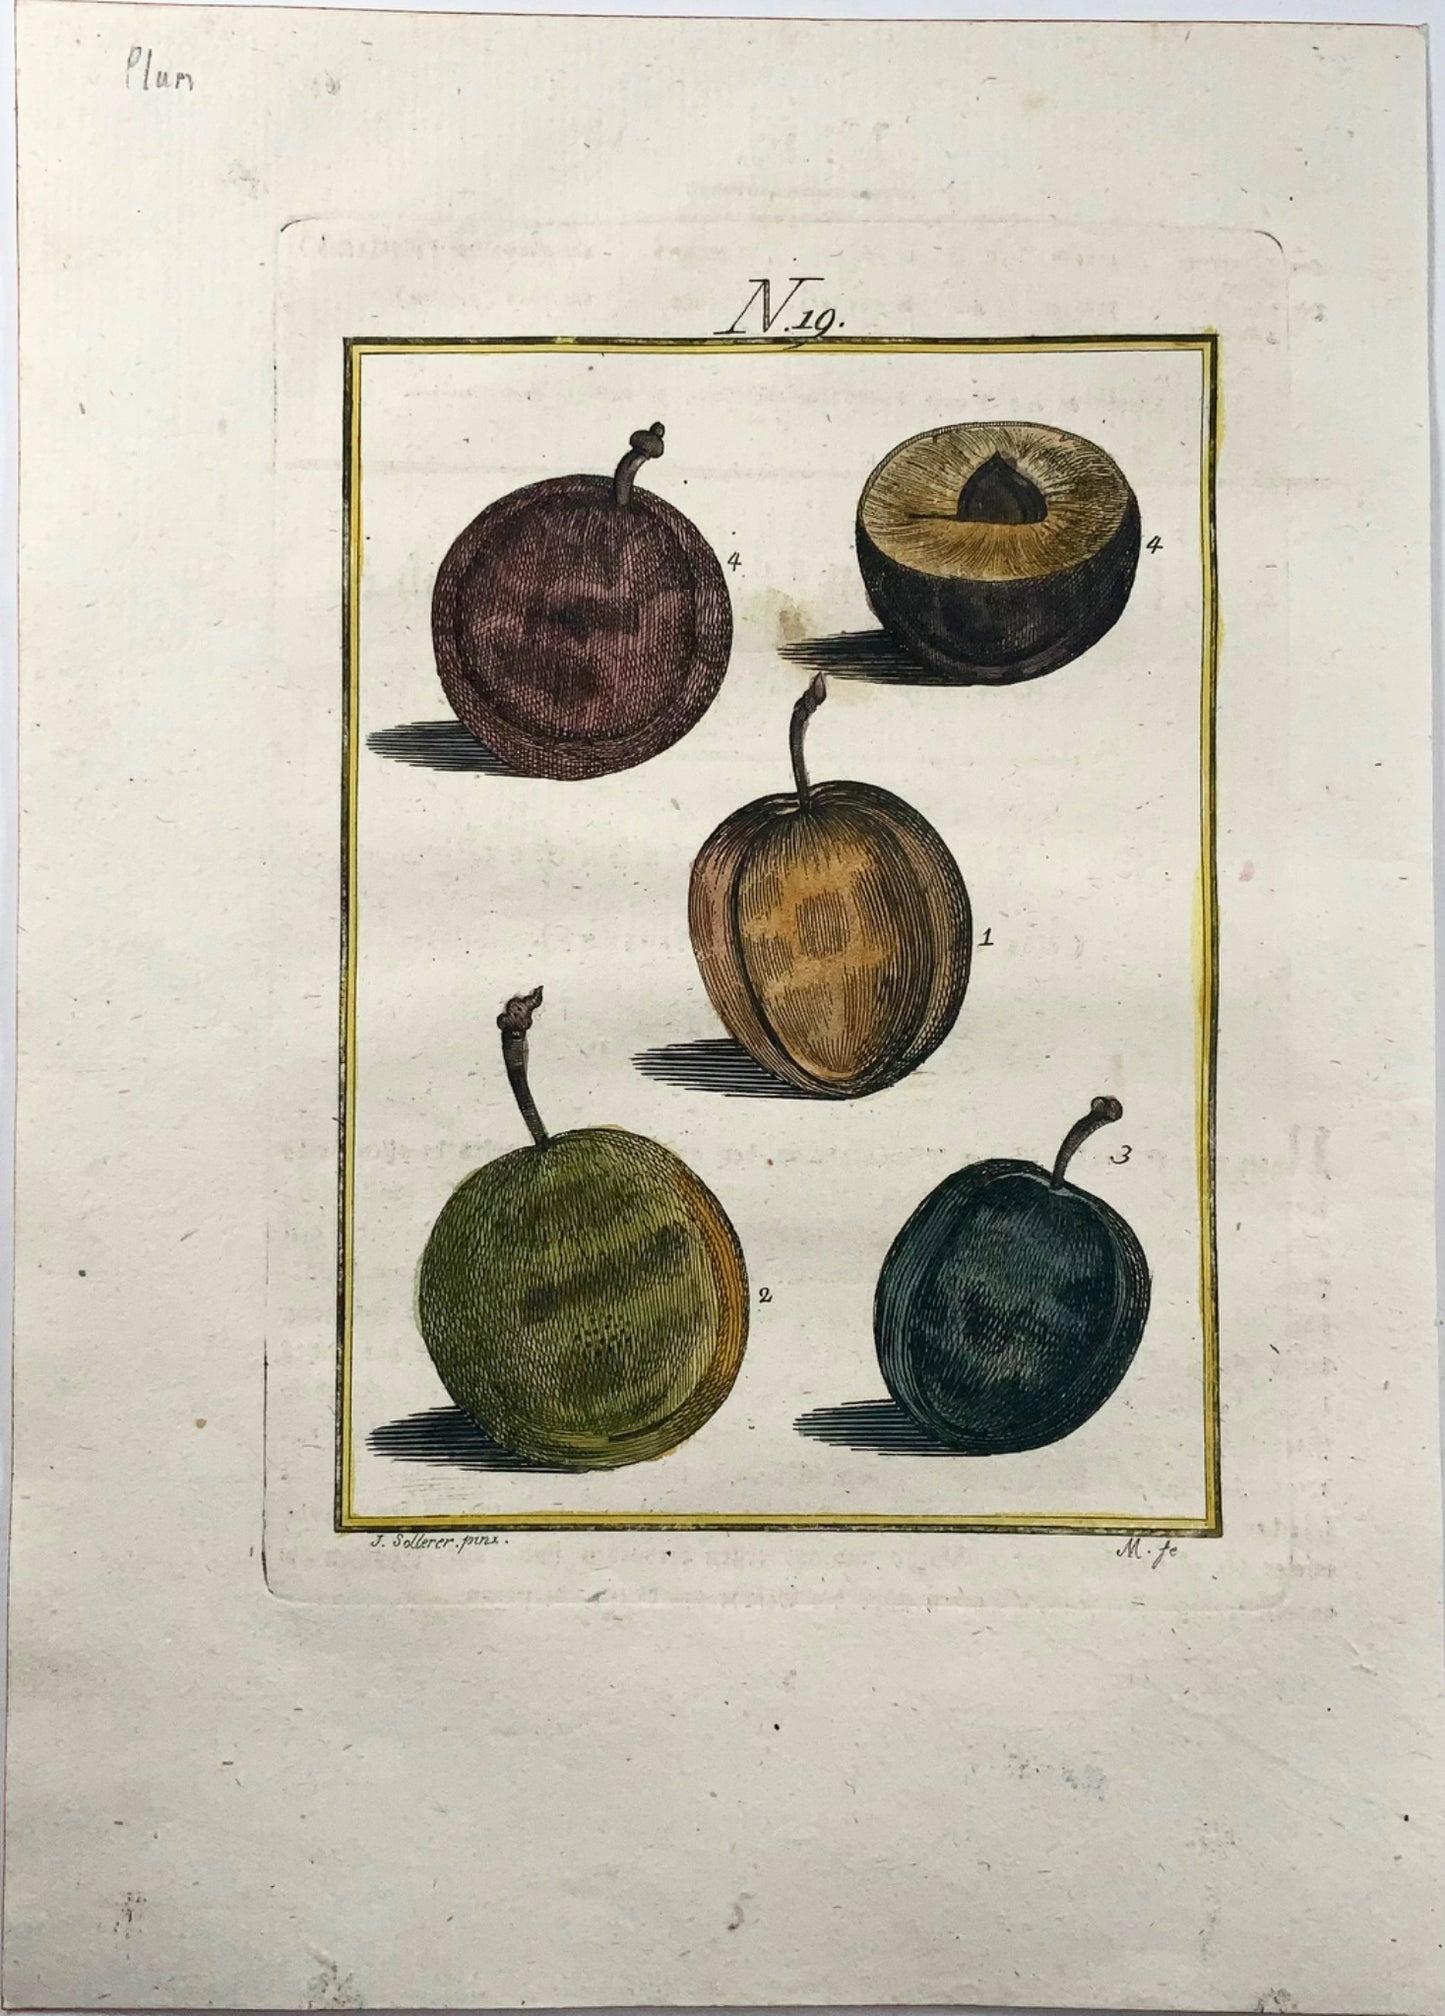 1790 Plum Tree, Fruit - Joh. Sollerer hand coloured engraving